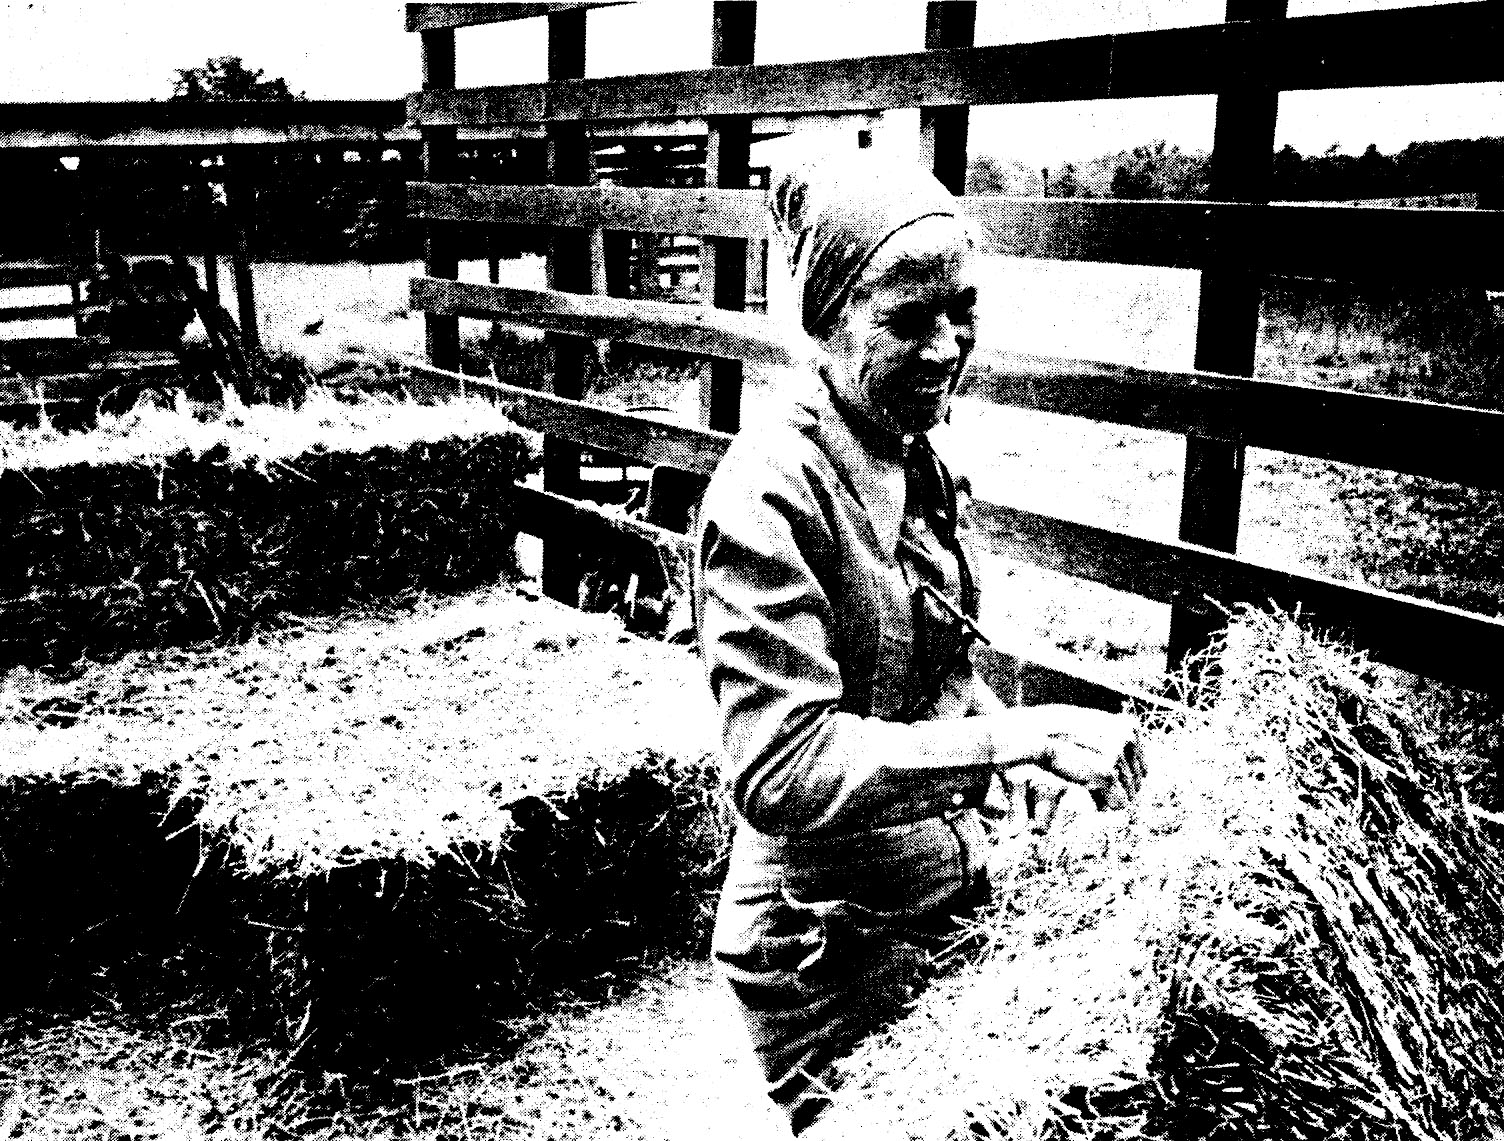 Ruth on Arrowhead Farm